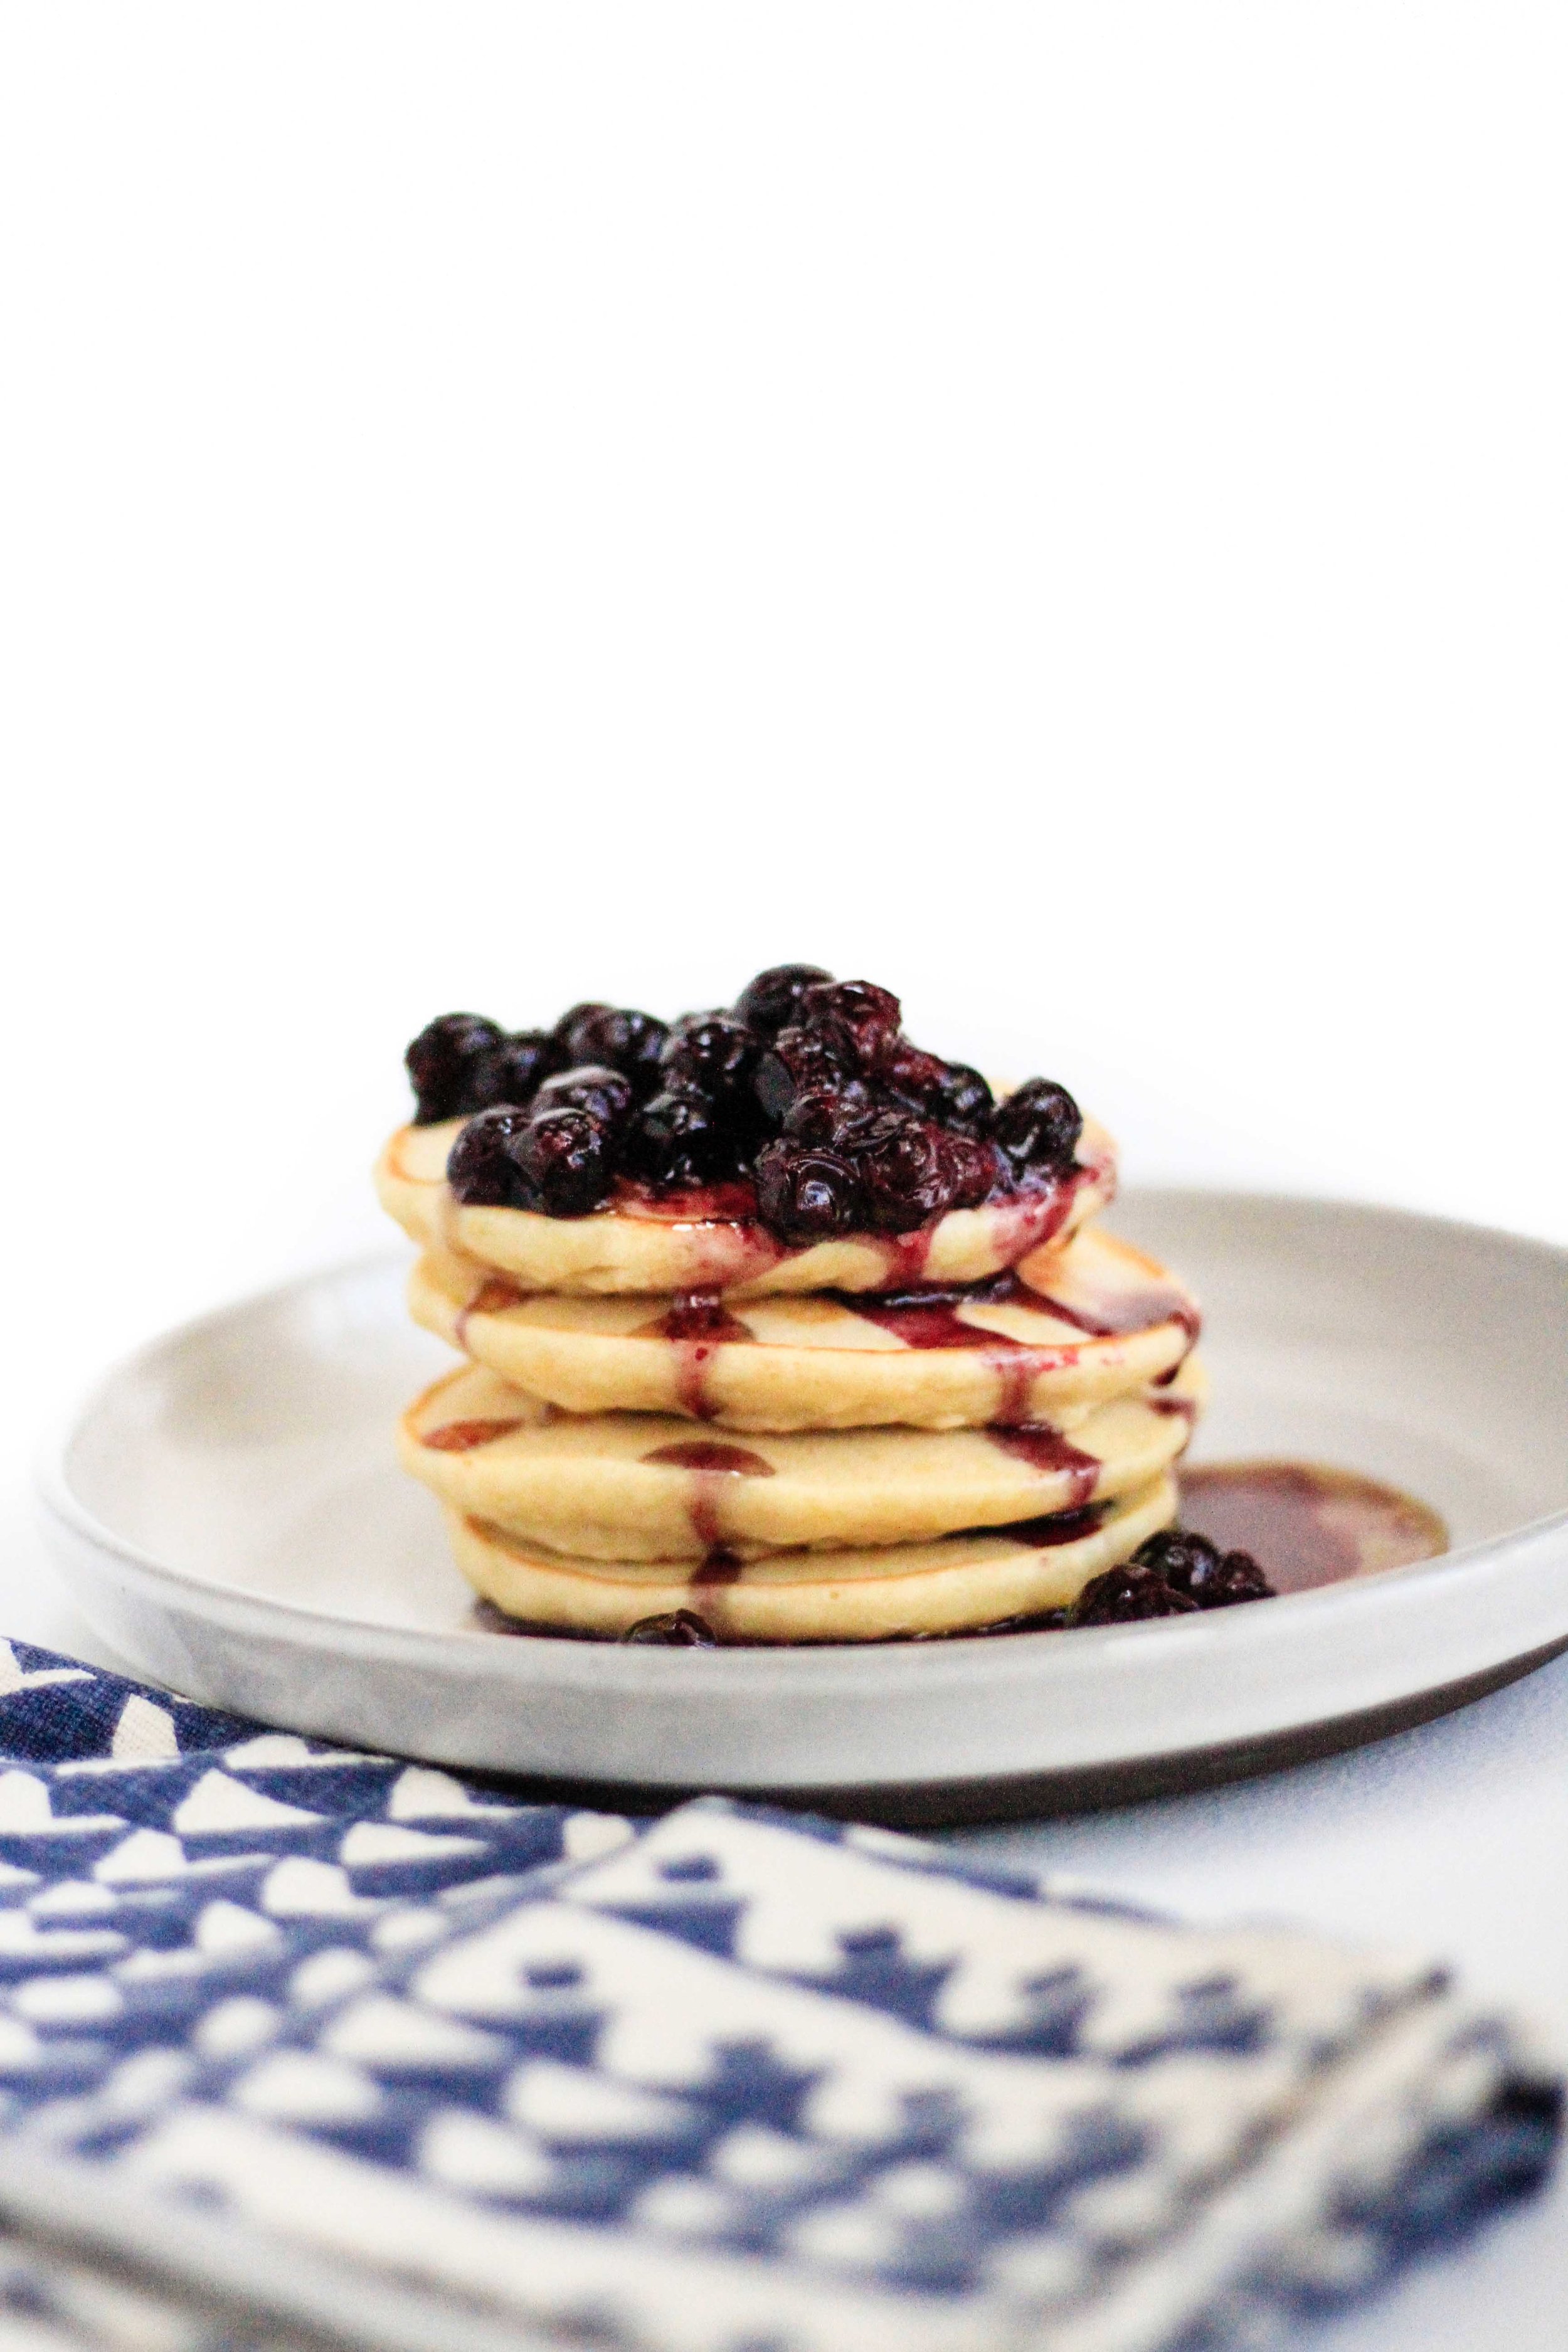 Roasted blueberry pancakes